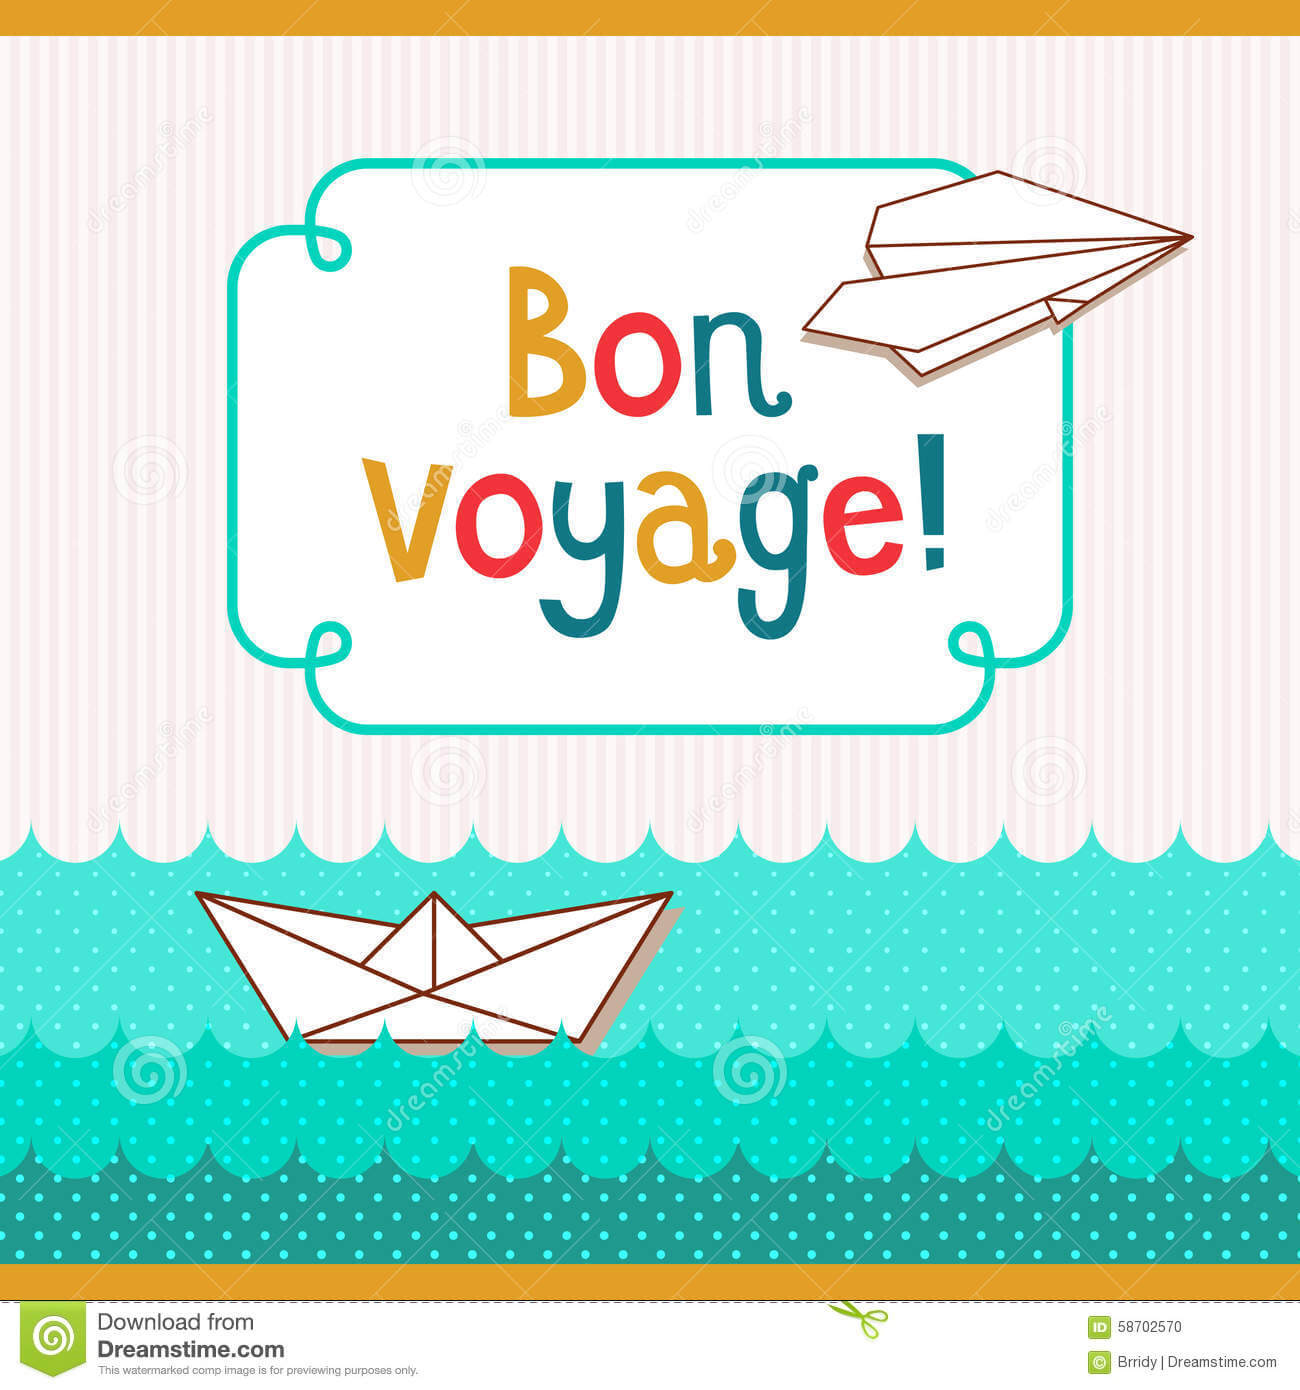 Bon Voyage Card Template ] - Bon Voyage Postcards Zazzle Com Pertaining To Bon Voyage Card Template